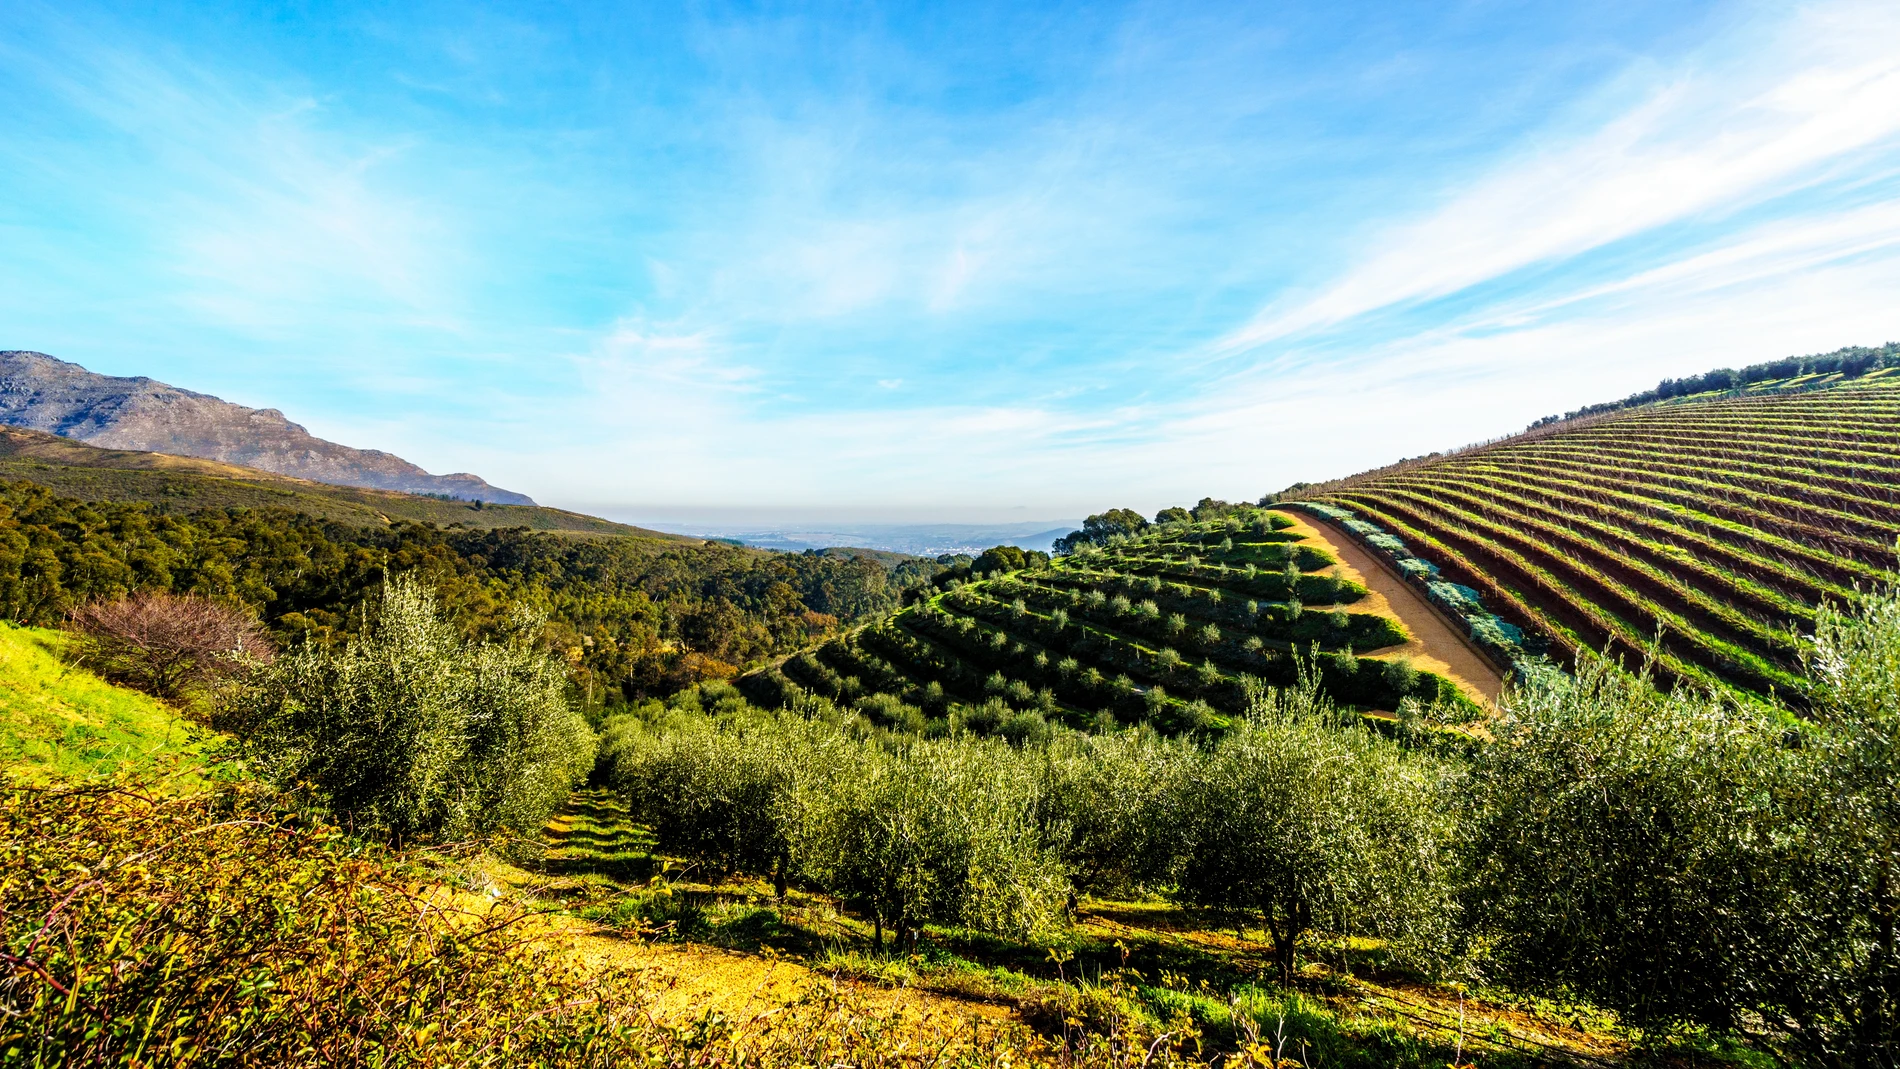 En España según los datos del Mapa se contabilizan 875.531 hectáreas de olivo en regadío, es decir, un 22,58%